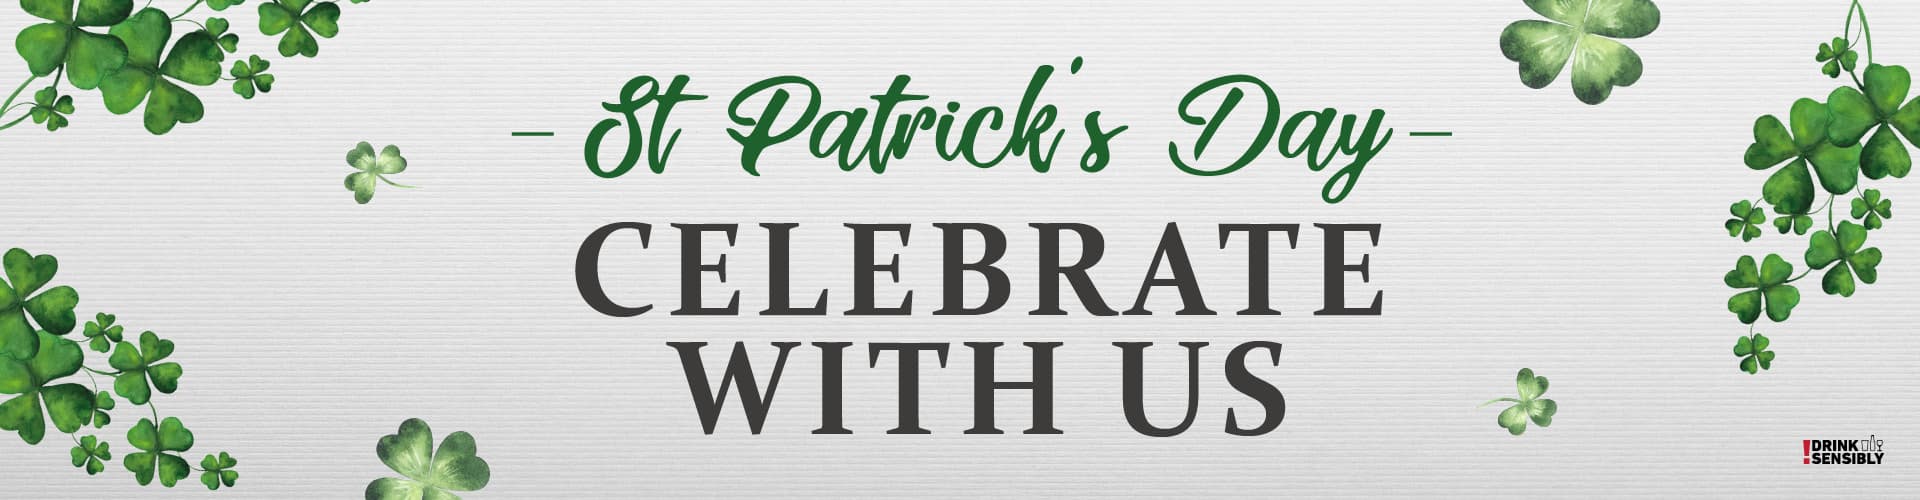 Celebrate St Patrick's Day in Ferndown